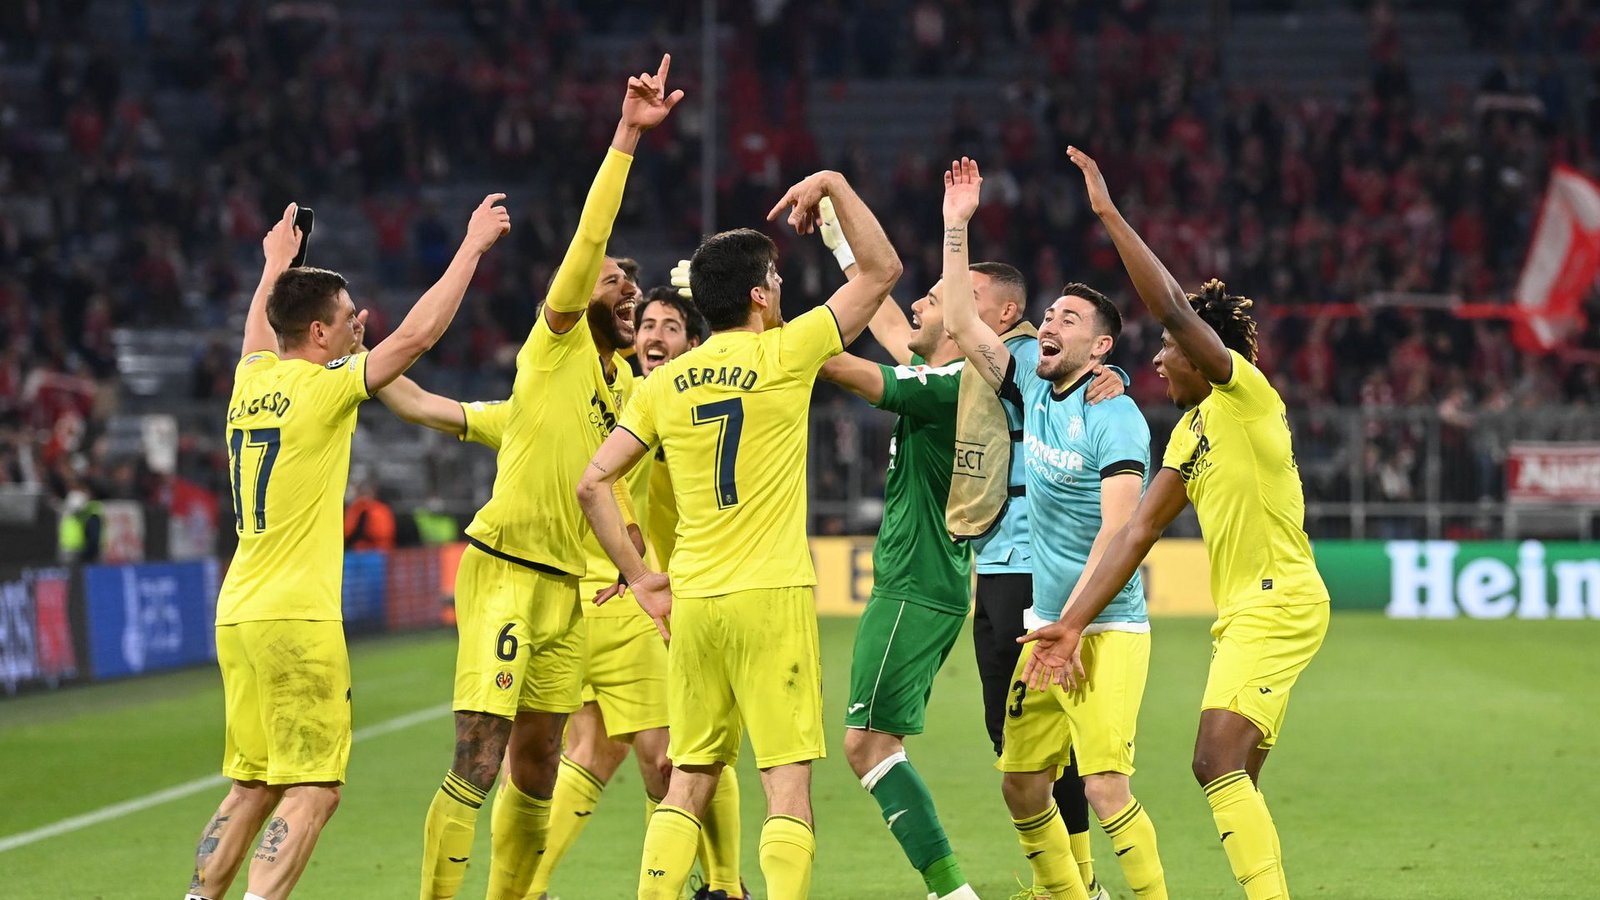 Der FC Villarreal hat Bayern München im Viertelfinale besiegt: Die Spieler feiern den Erfolg.Foto: Sven Hoppe/dpa